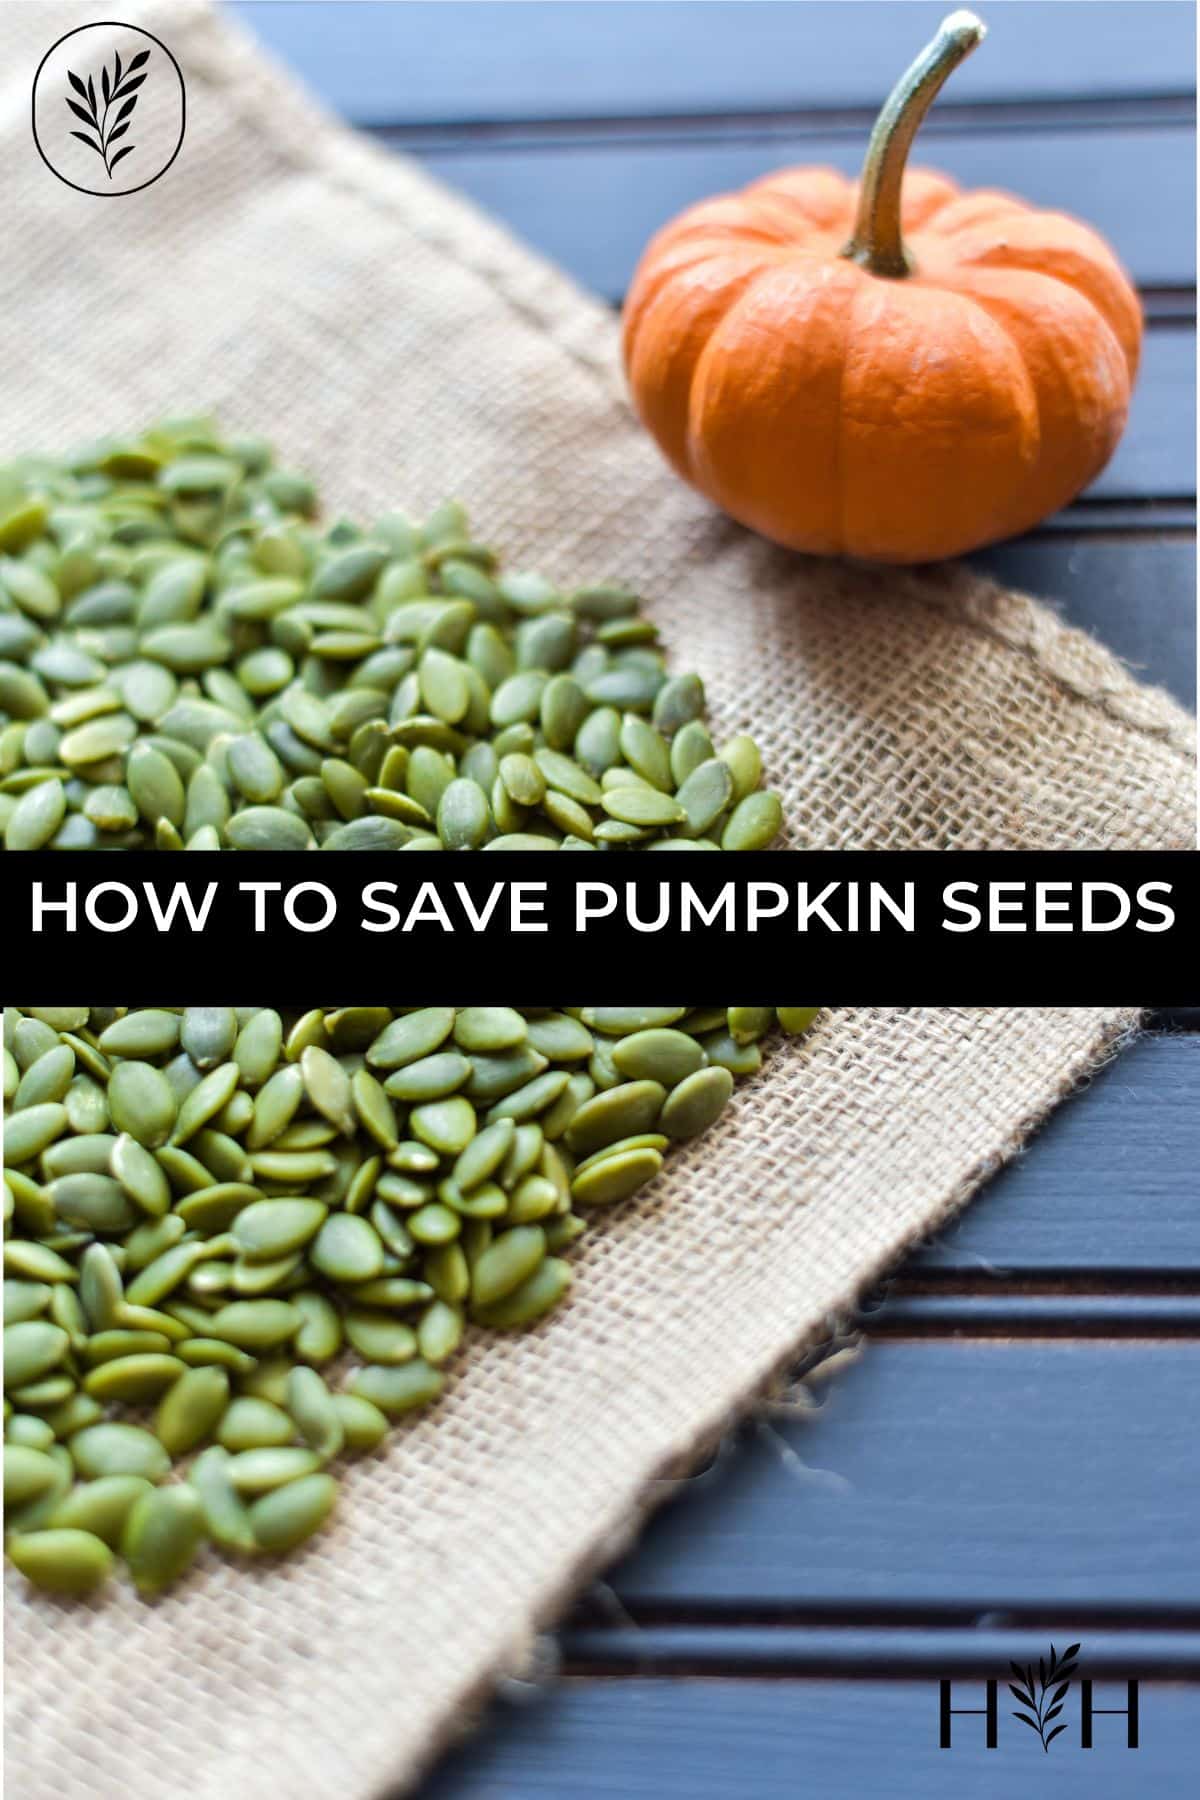 How to save pumpkin seeds via @home4theharvest